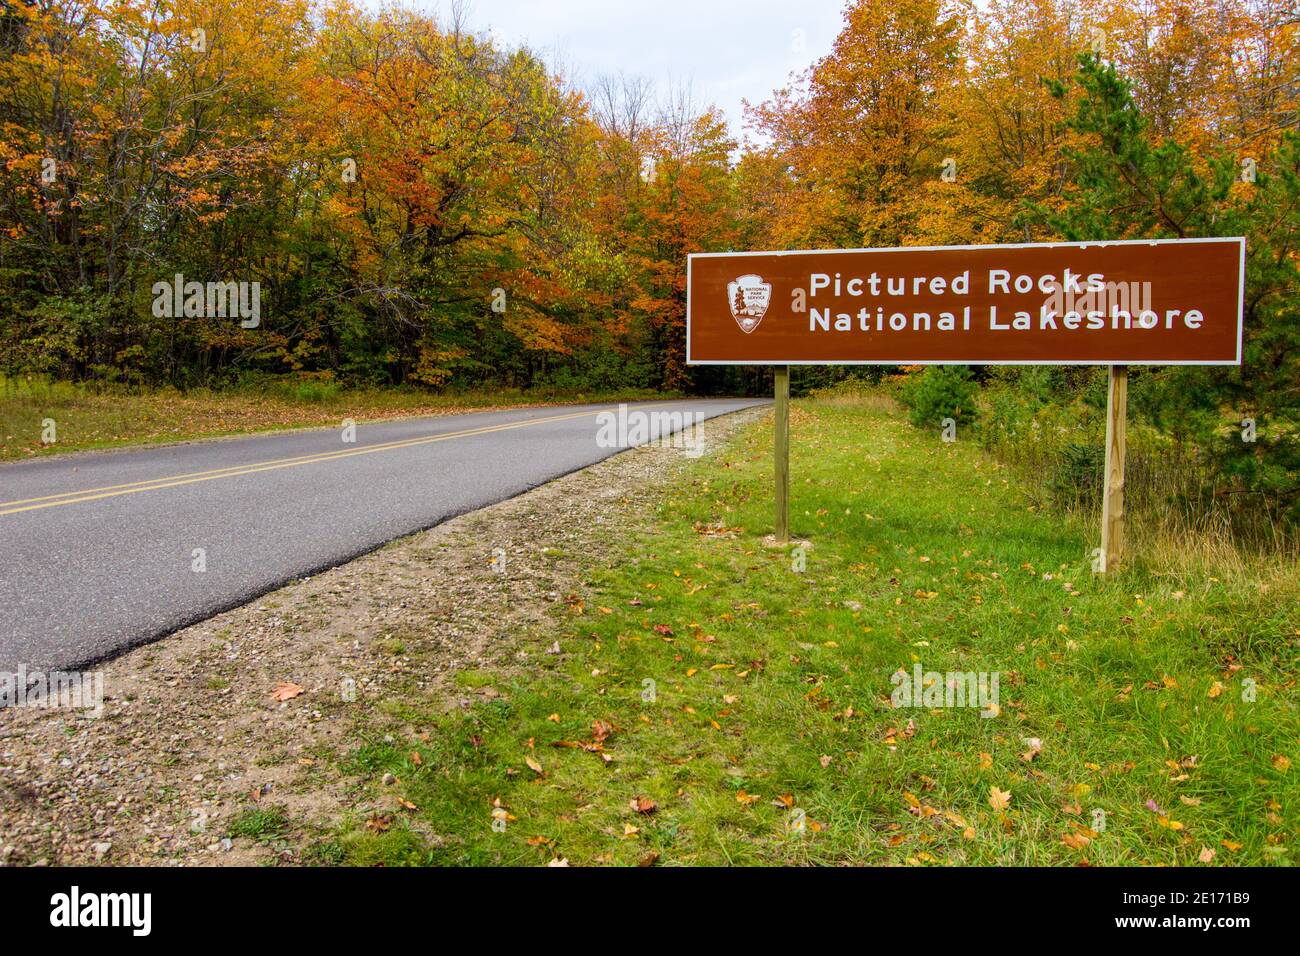 Munising, États-Unis - un magnifique feuillage d'automne luxuriant et vibrant entoure le panneau d'entrée de Pictured Rocks National Lakeshore dans la péninsule supérieure du Michigan. Banque D'Images